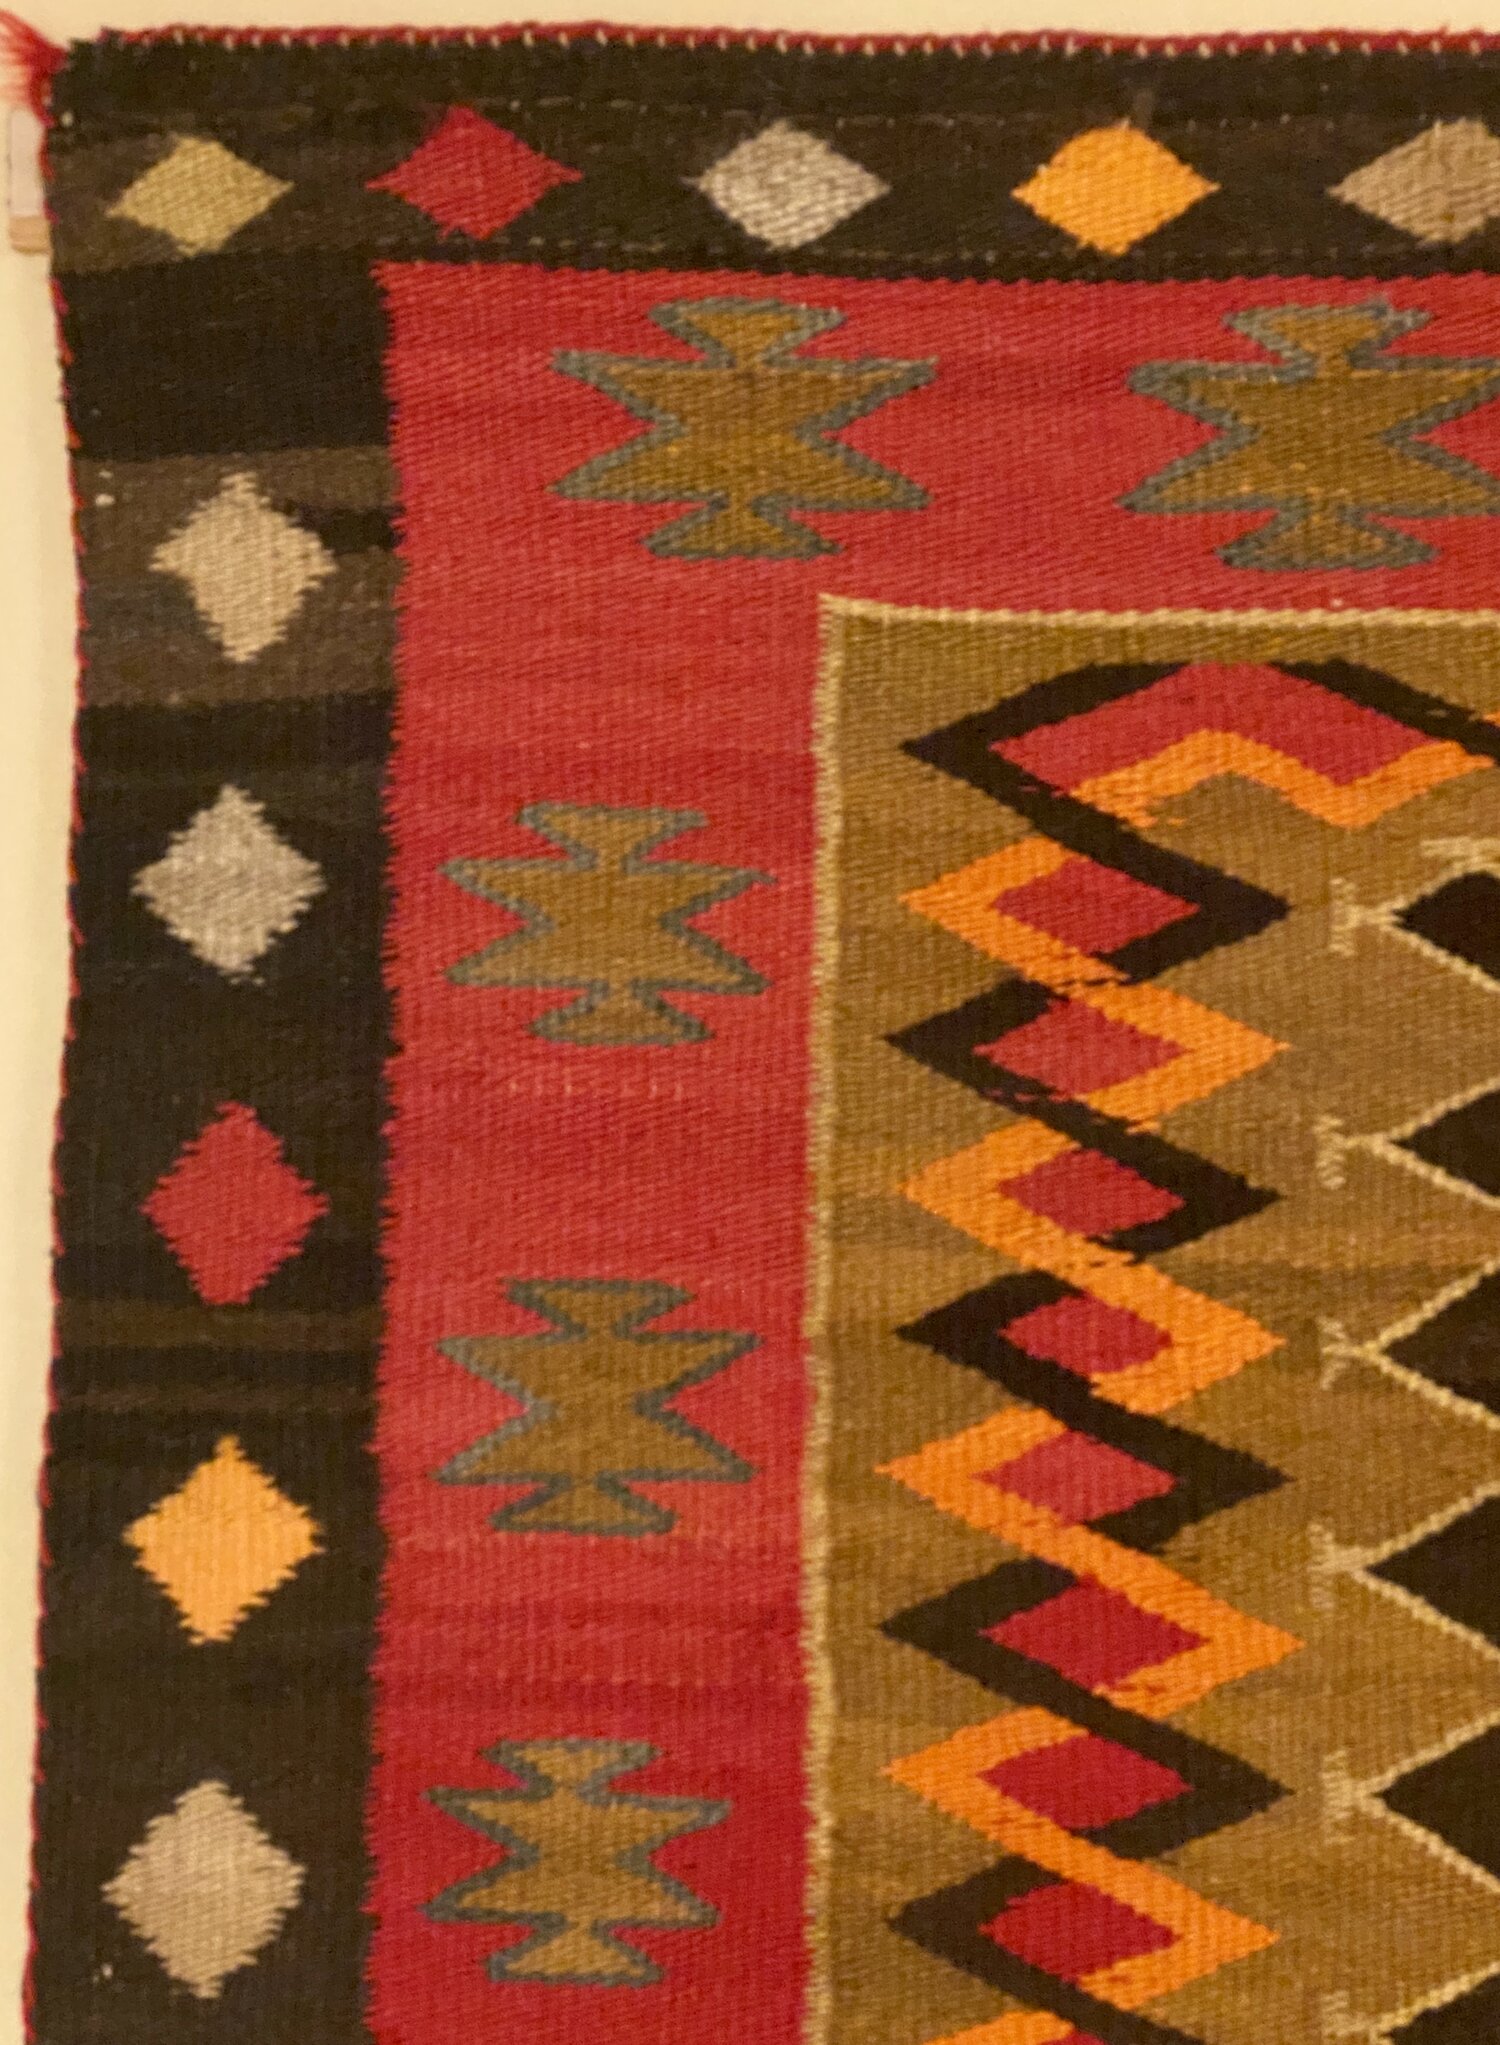 Medium Red Oak Navajo Weaving Comb • Navajo Arts And Crafts Enterprise